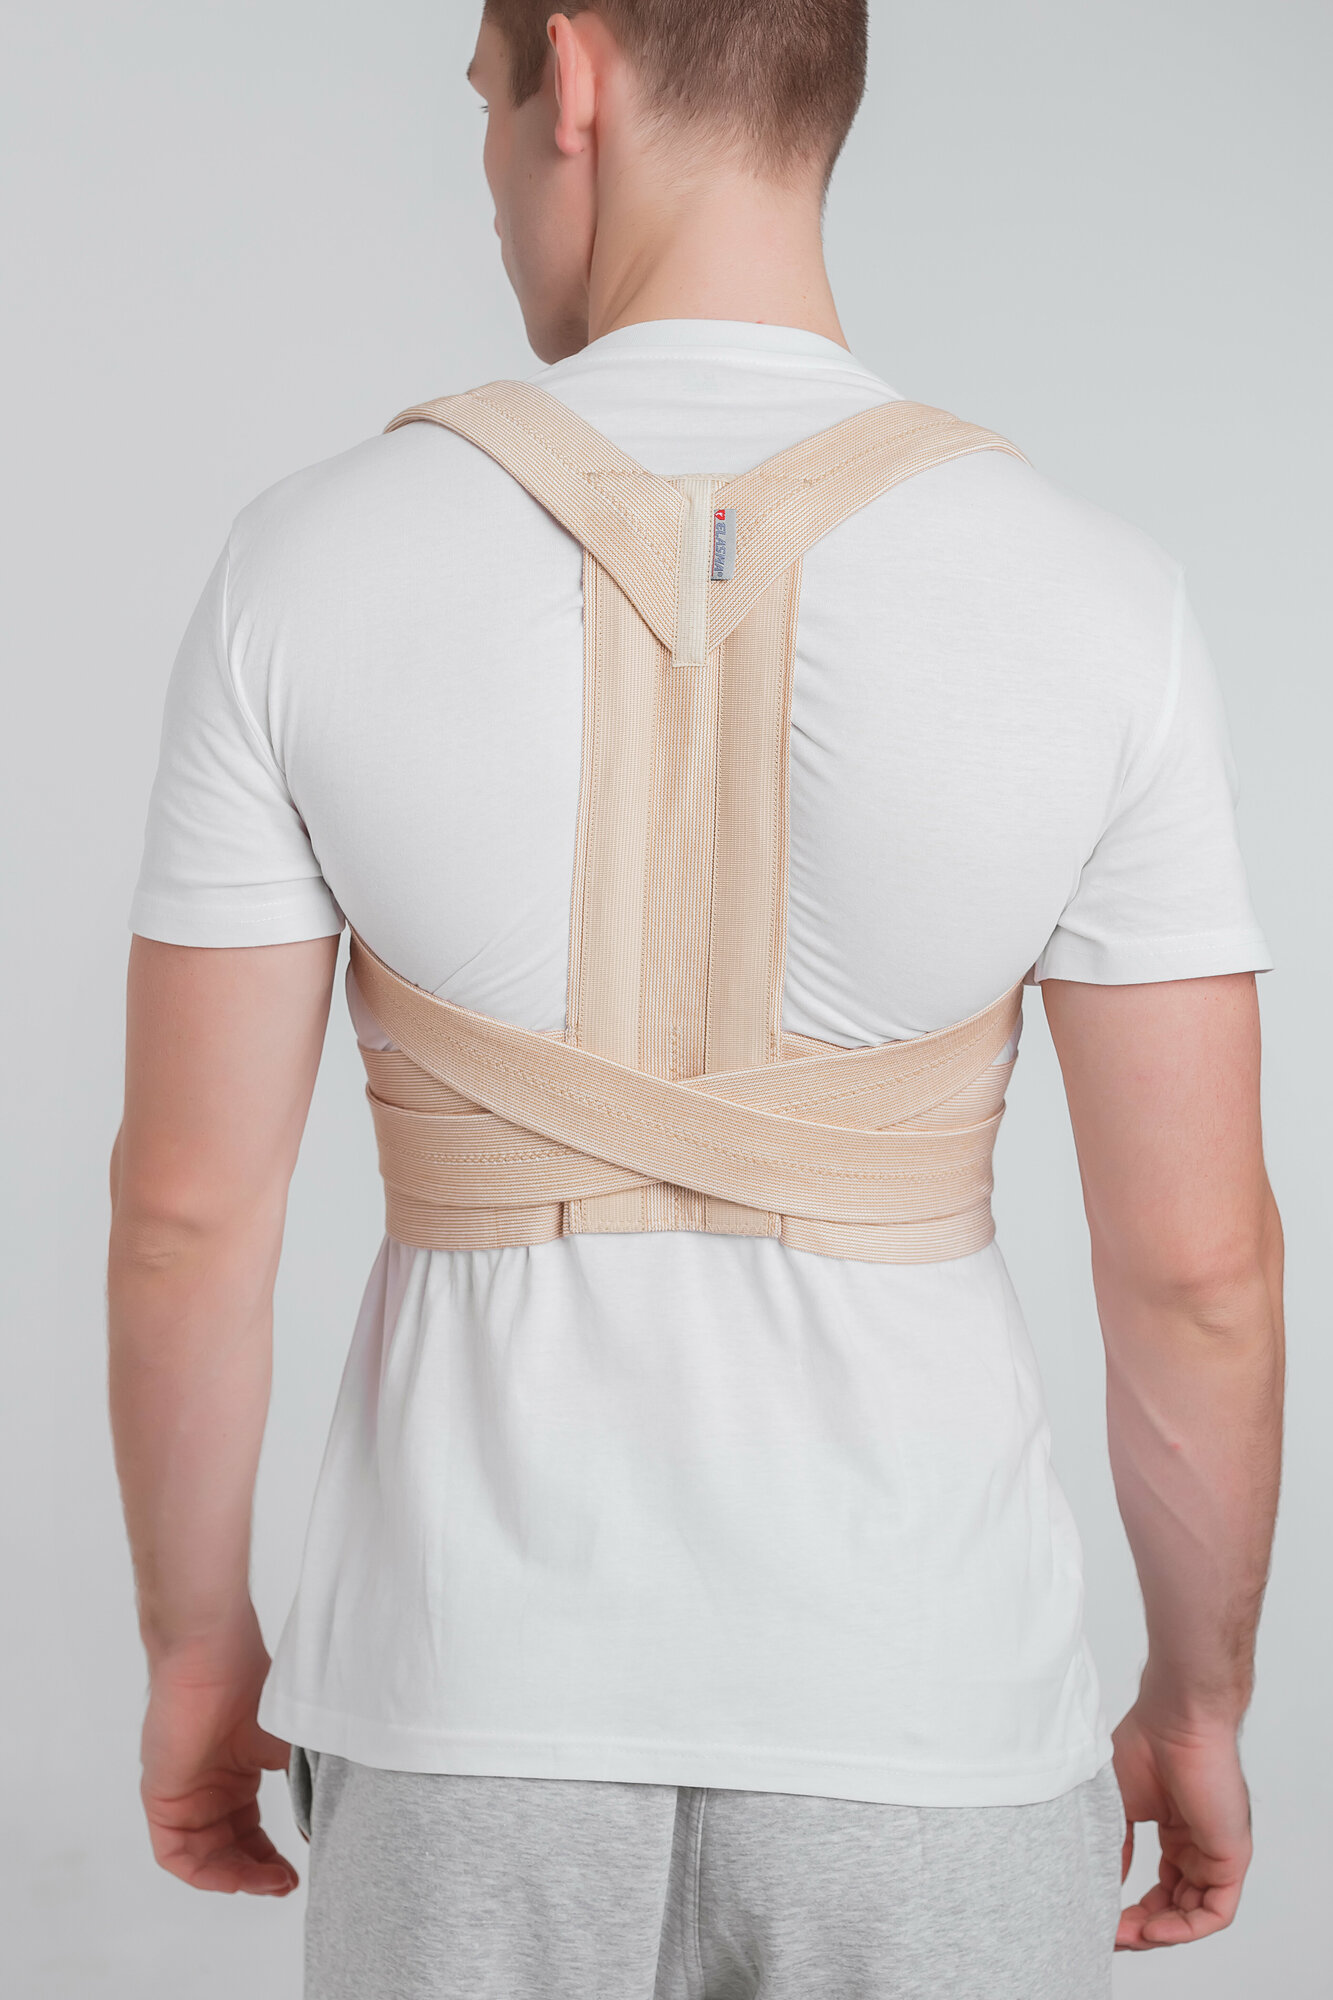 Корректор осанки ортопедический Эласма - корсет для спины медицинский эластичный, регулируемый с жесткими вставками. Бежевый, 3 размер.